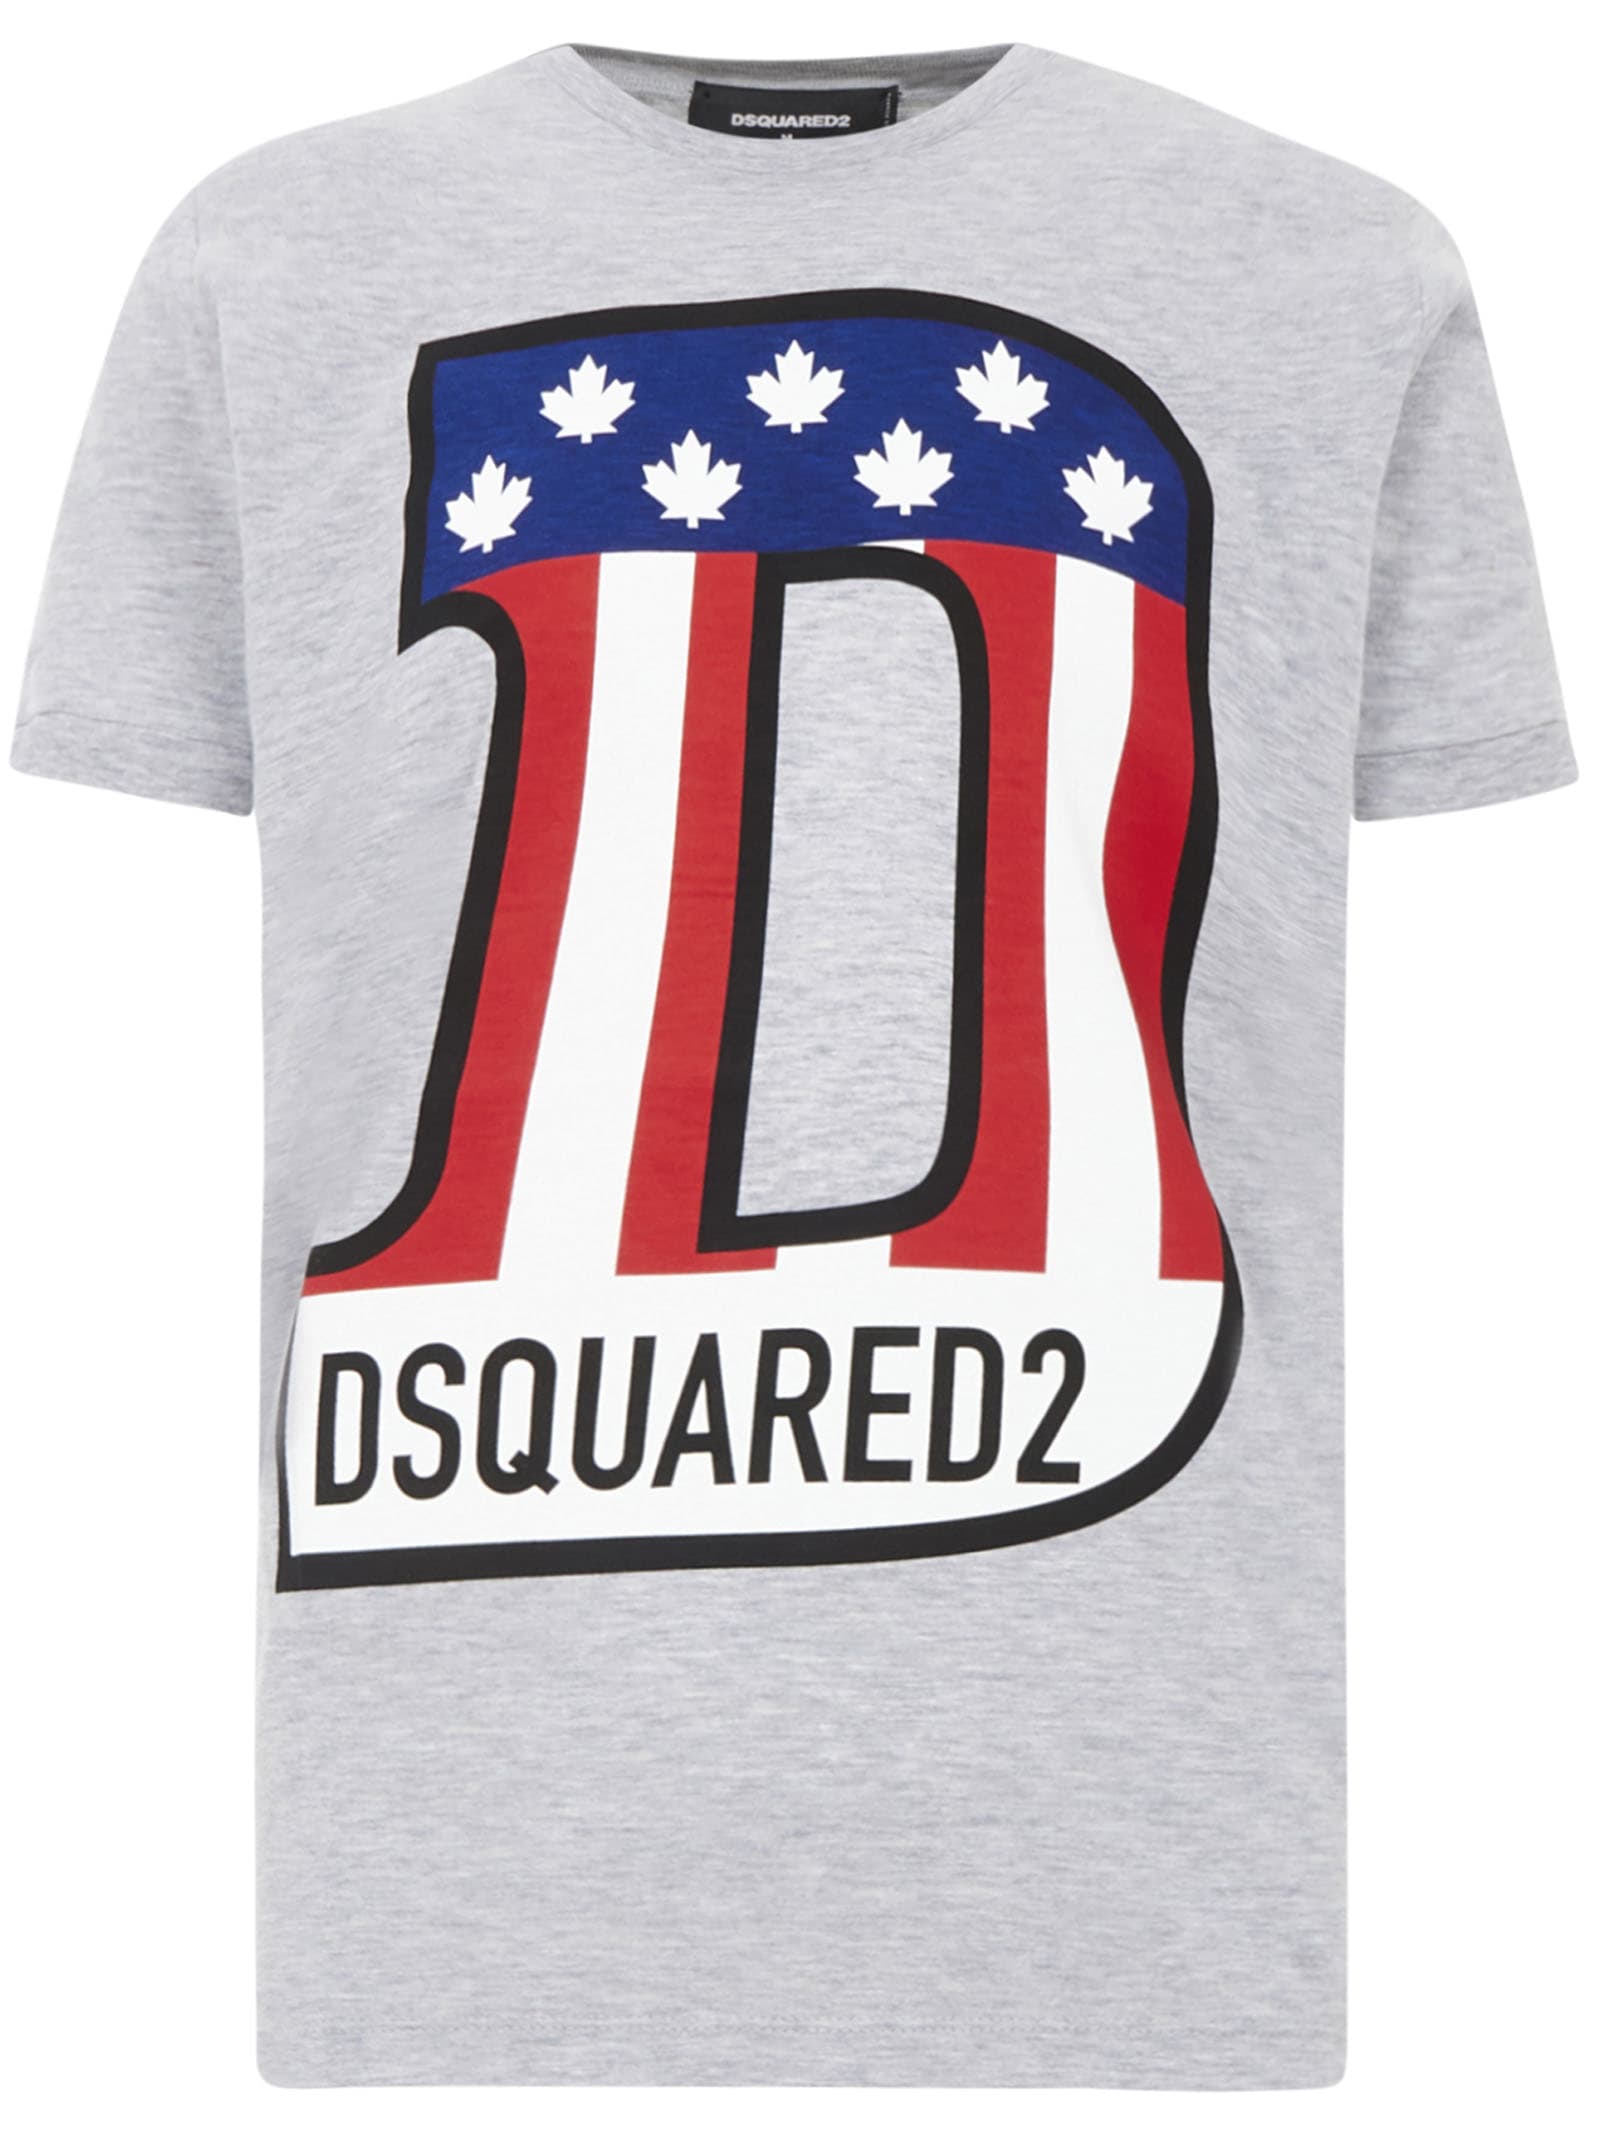 dsq2 t-shirt sale